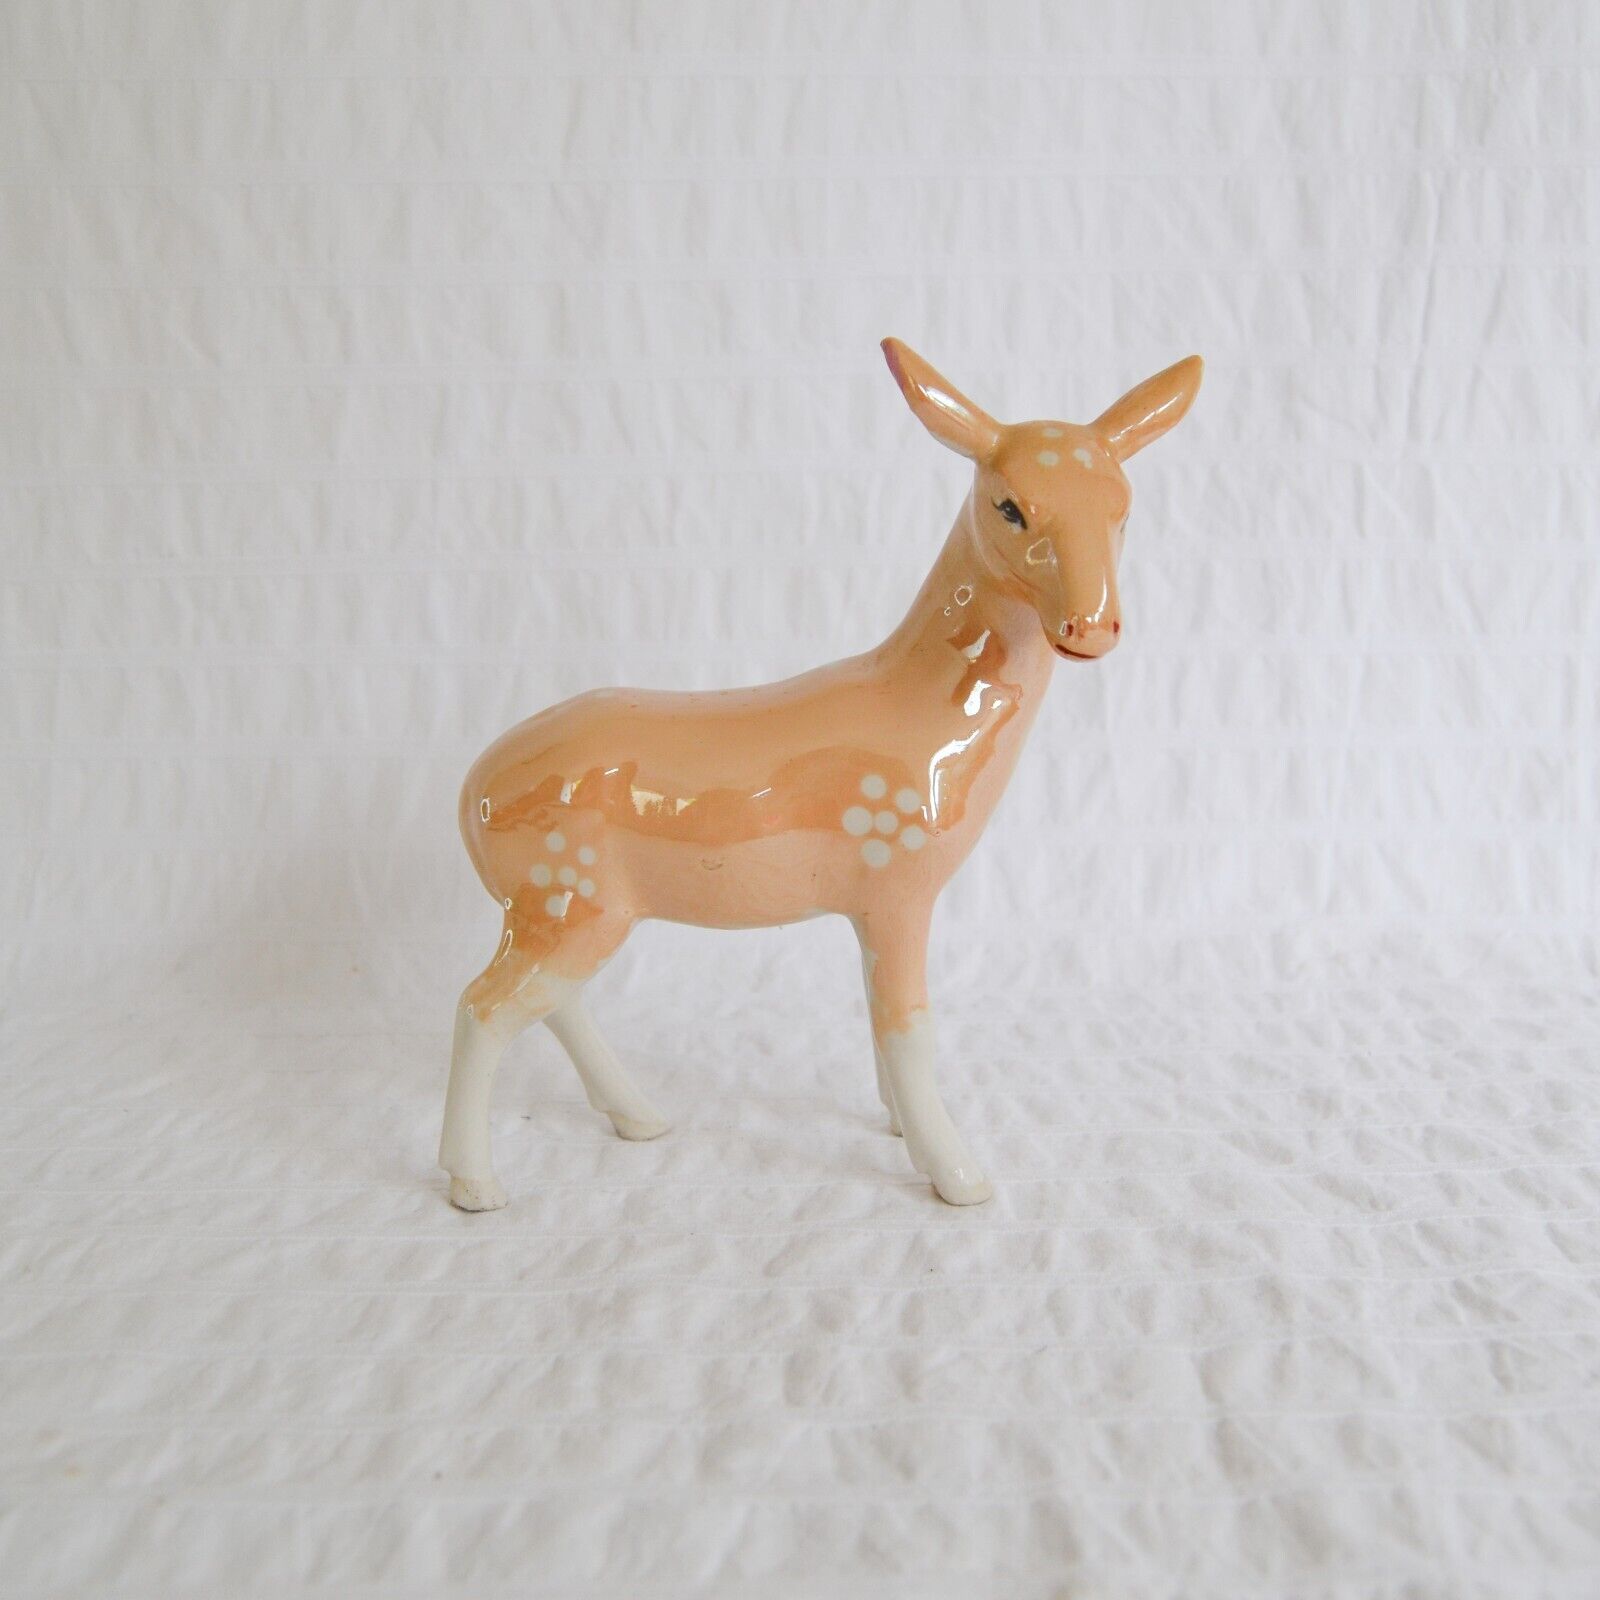 Vintage Ceramic Deer Figurine, Standing Doe Pastel Opalescent Glaze 12cm